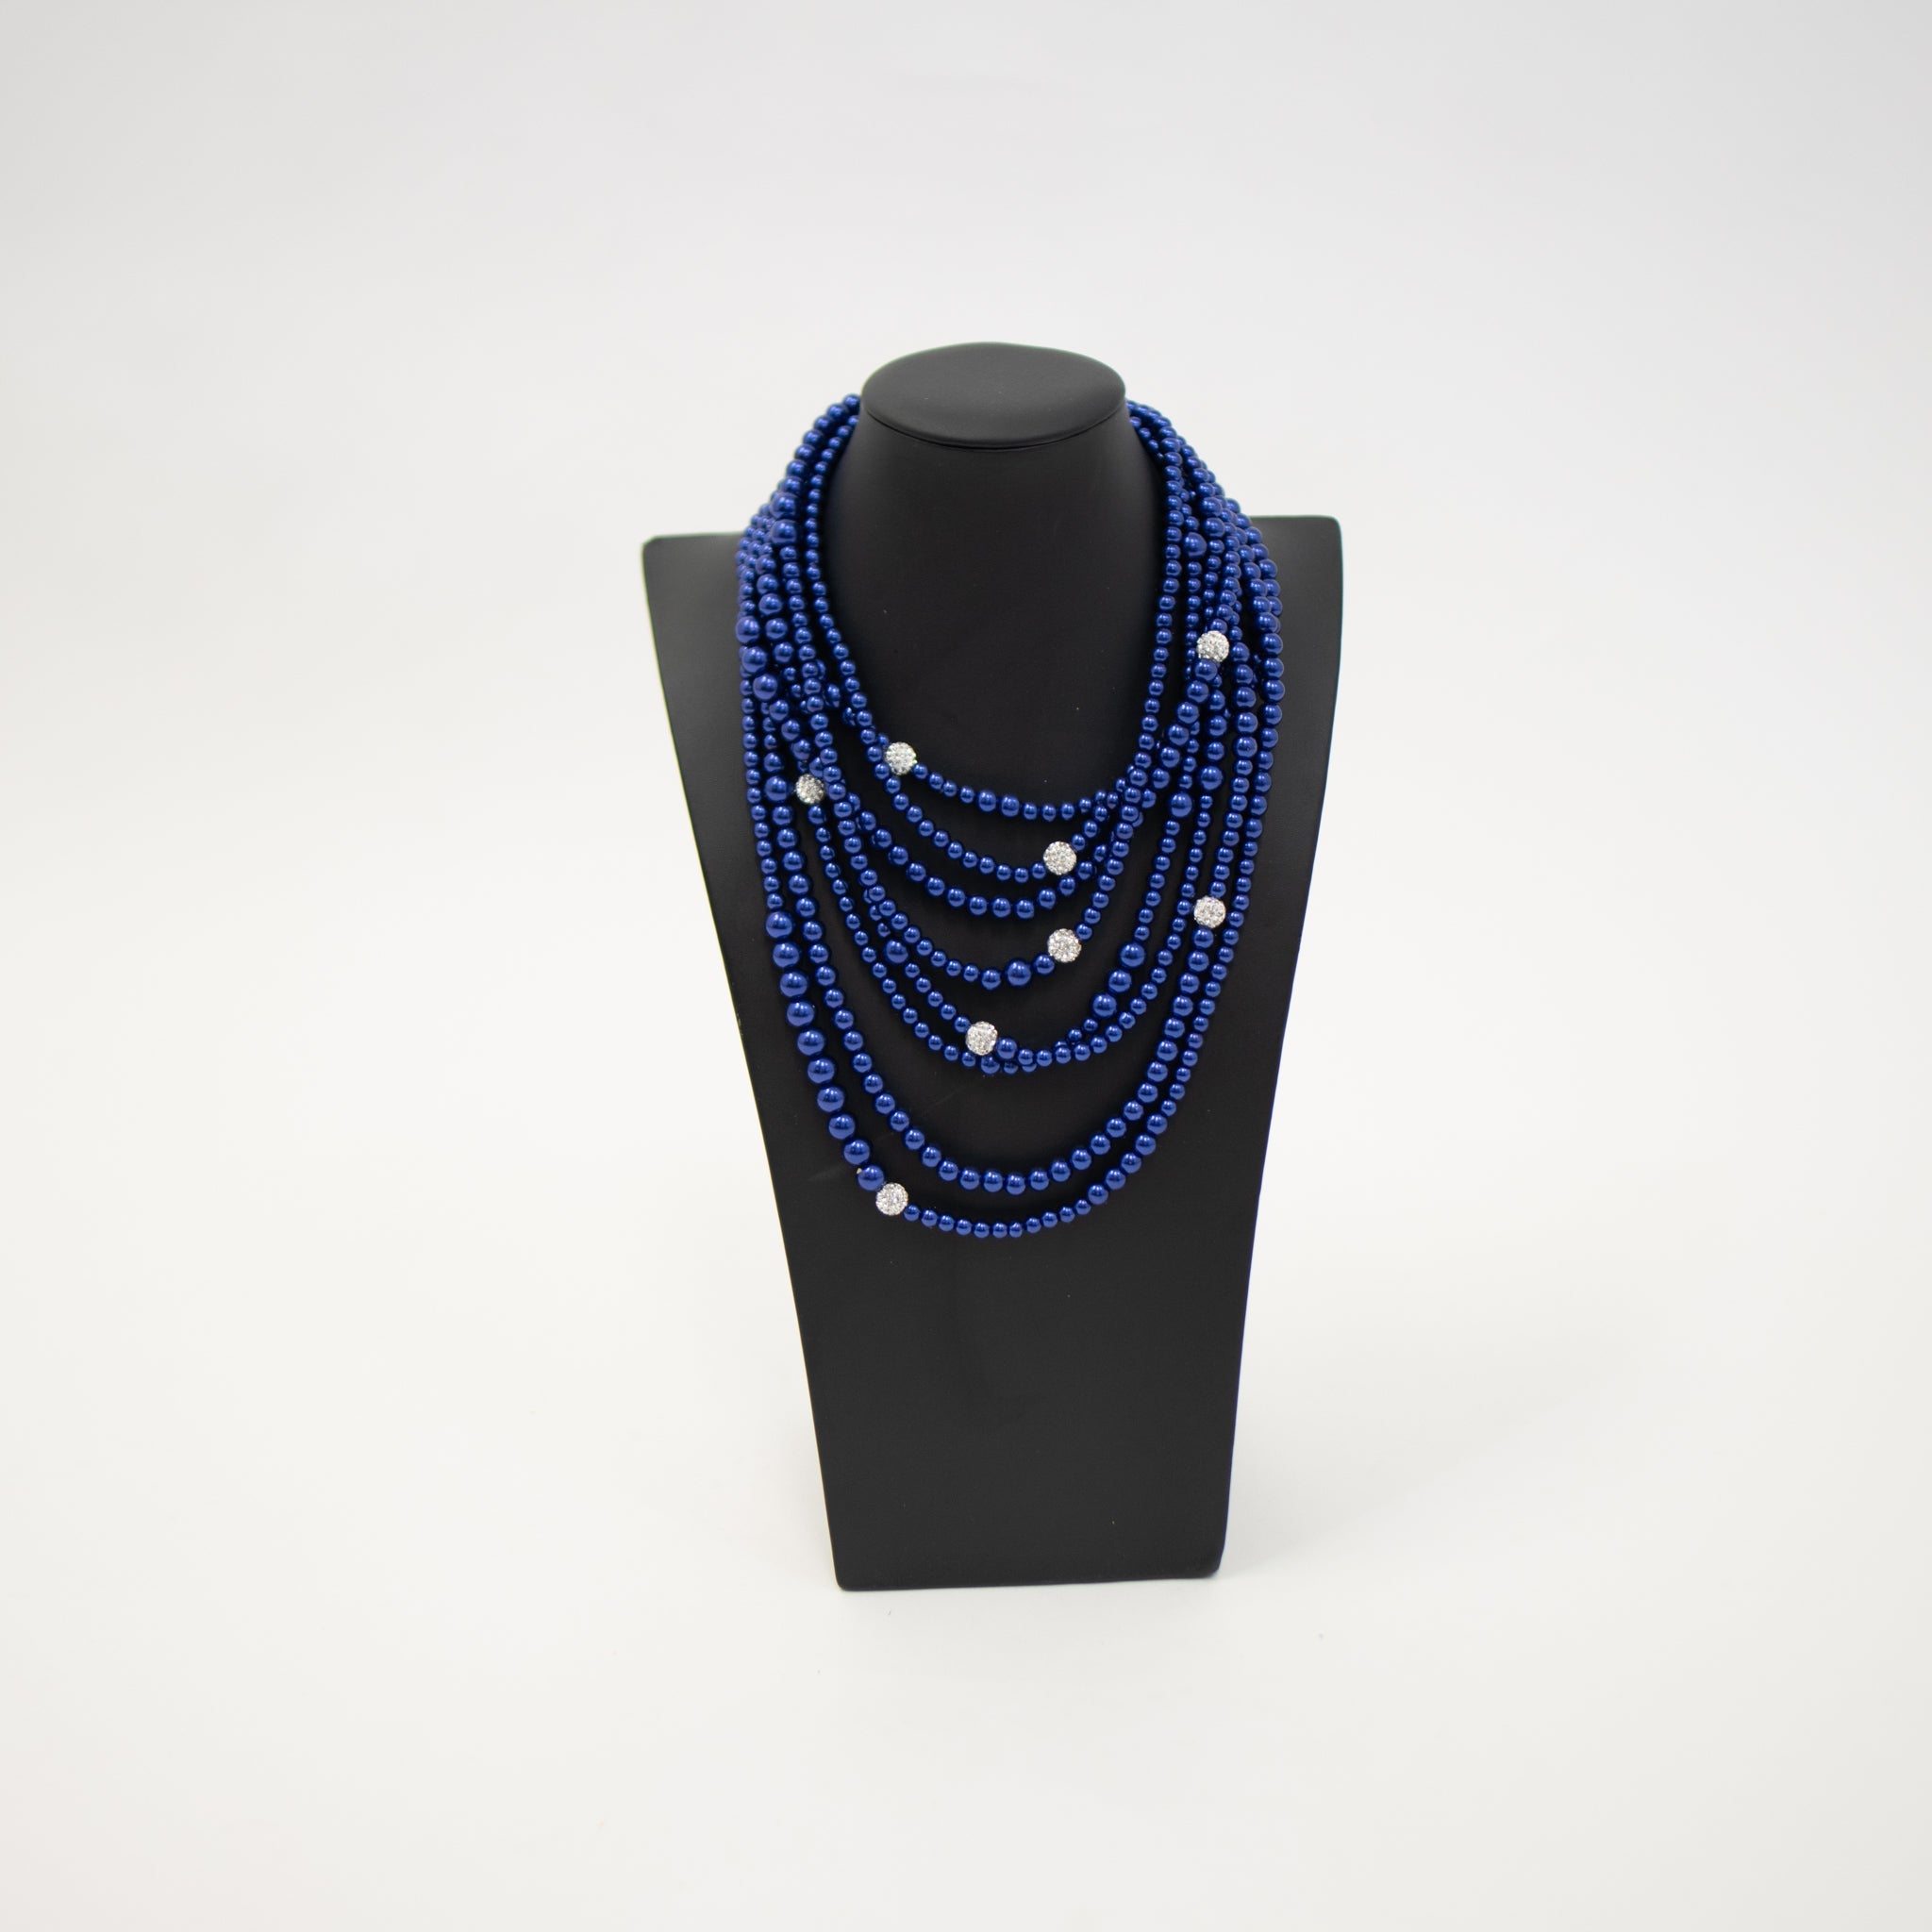 Blue & Silver Necklace Set - Diva Starr Boutique